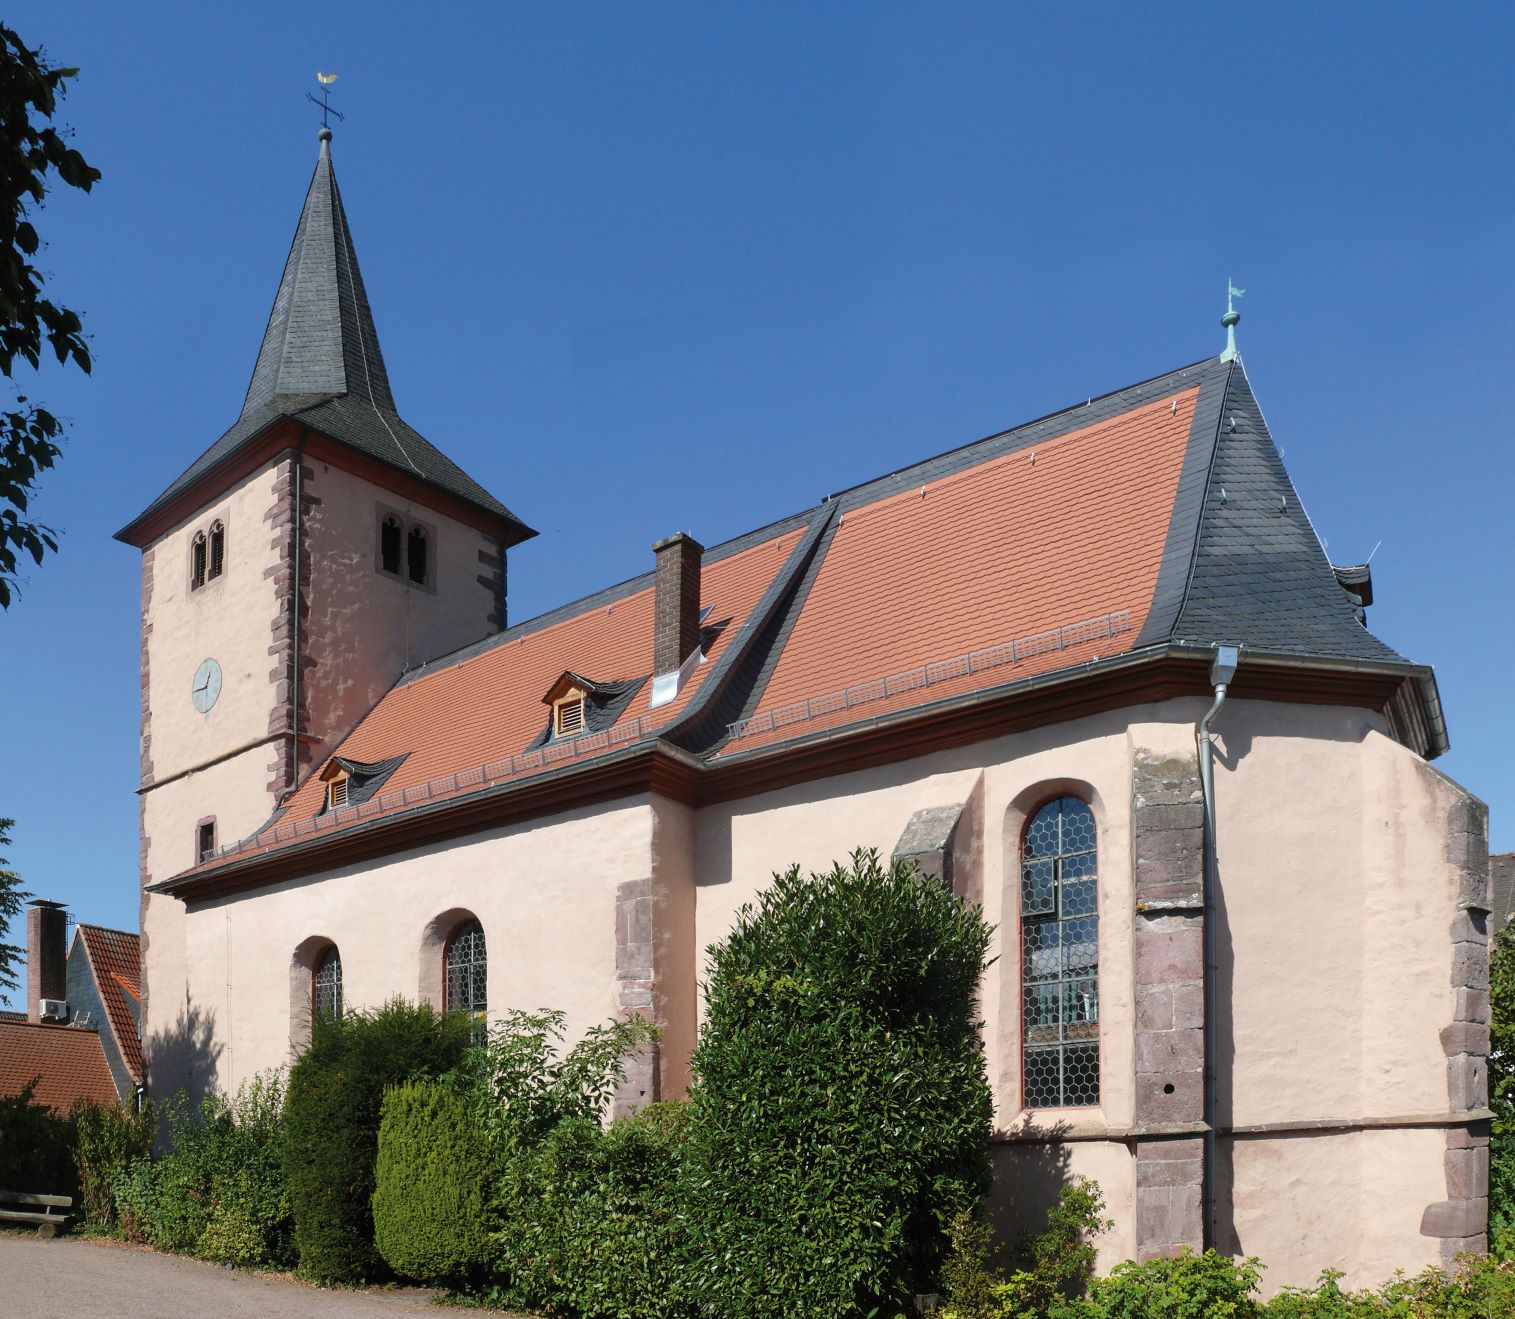 Die Kirche von Offenthal, dem östlichsten Stadtteil von Dreieich, liegt in der Ortsmitte. Die über 600 Jahre alte Kirche mit dem umgebenden Kirchgarten prägen den historischen Ortskern. Nach einer mündlichen Überlieferung wurde die Kirche um das Jahr 1400